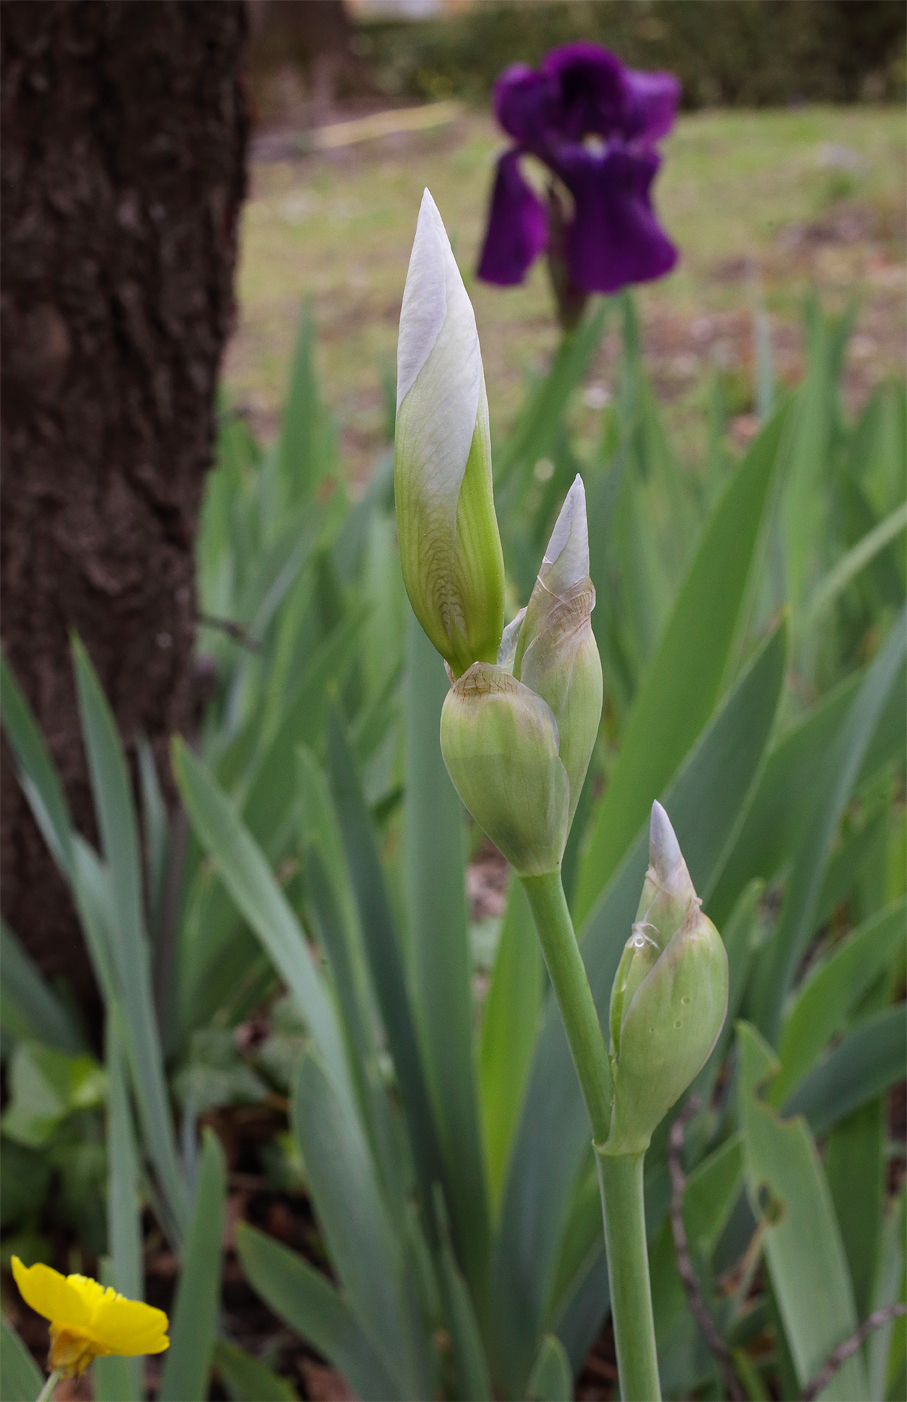 scapo fiorifero di Iris florentina L. con la tipica struttura a 3 fiori, tutti in boccio, sullo sfondo Iris germanica fiorita